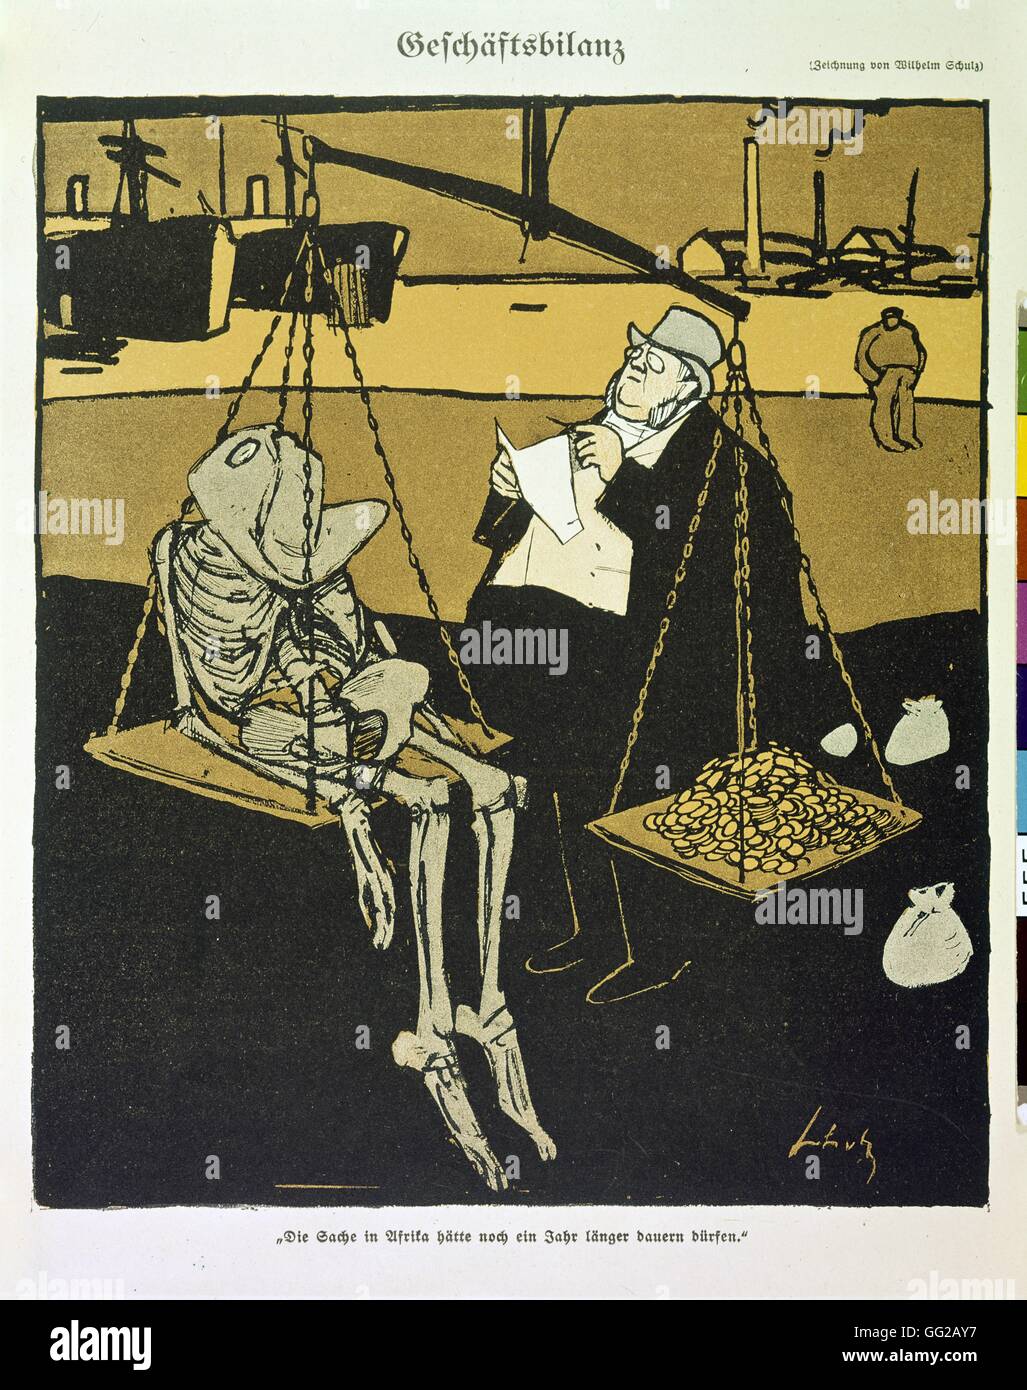 Schulz 'statement' de negocios, una caricatura sobre las guerras coloniales alemanes 1906 Alemania París. Bibliothèque nationale Foto de stock